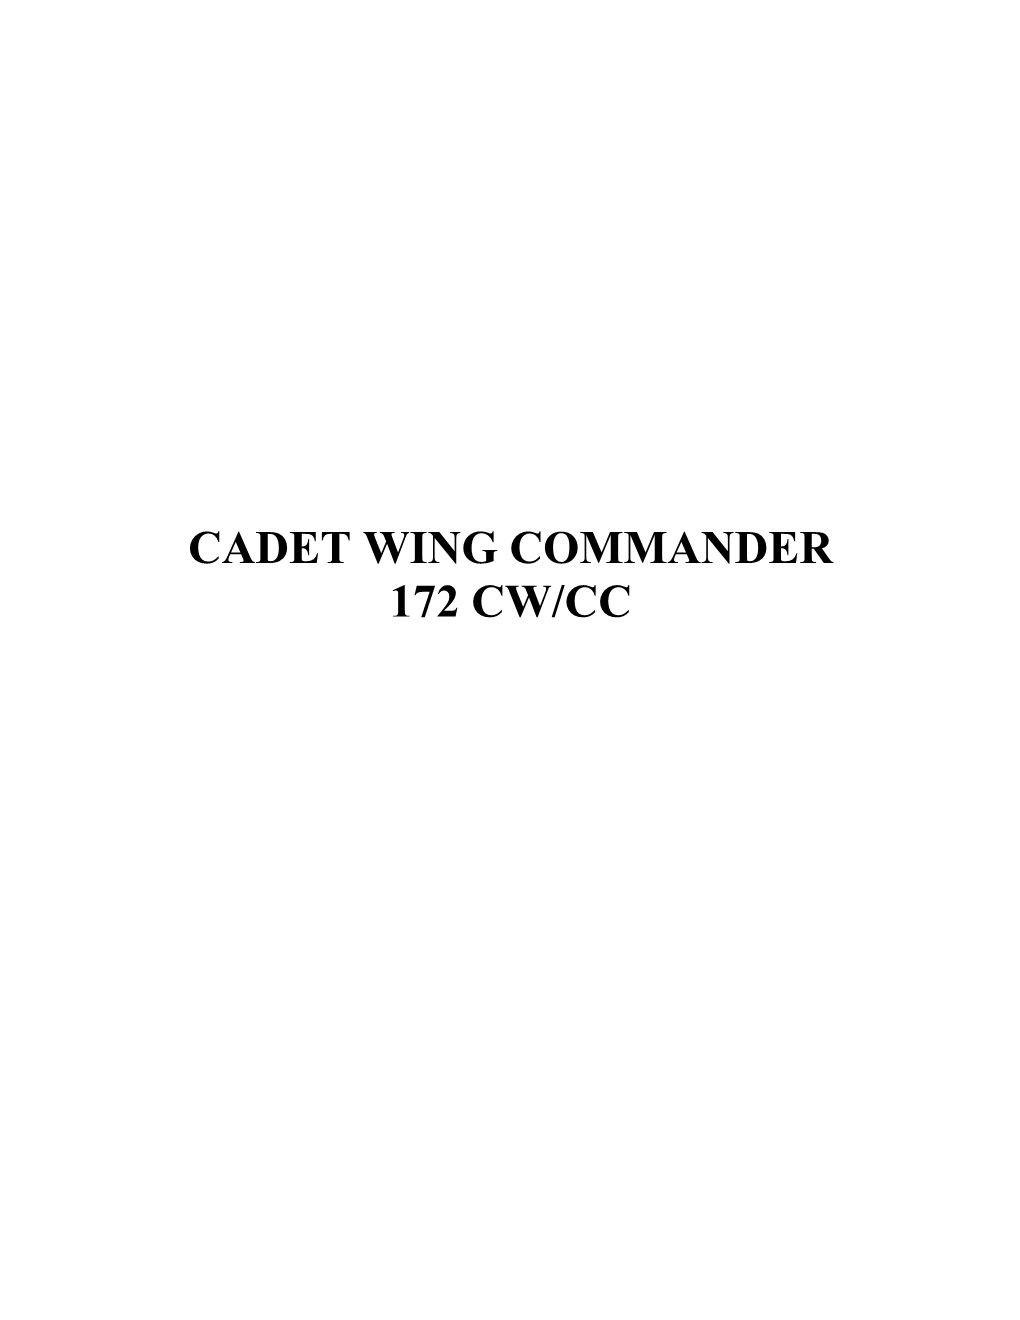 Cadet Wing Commander